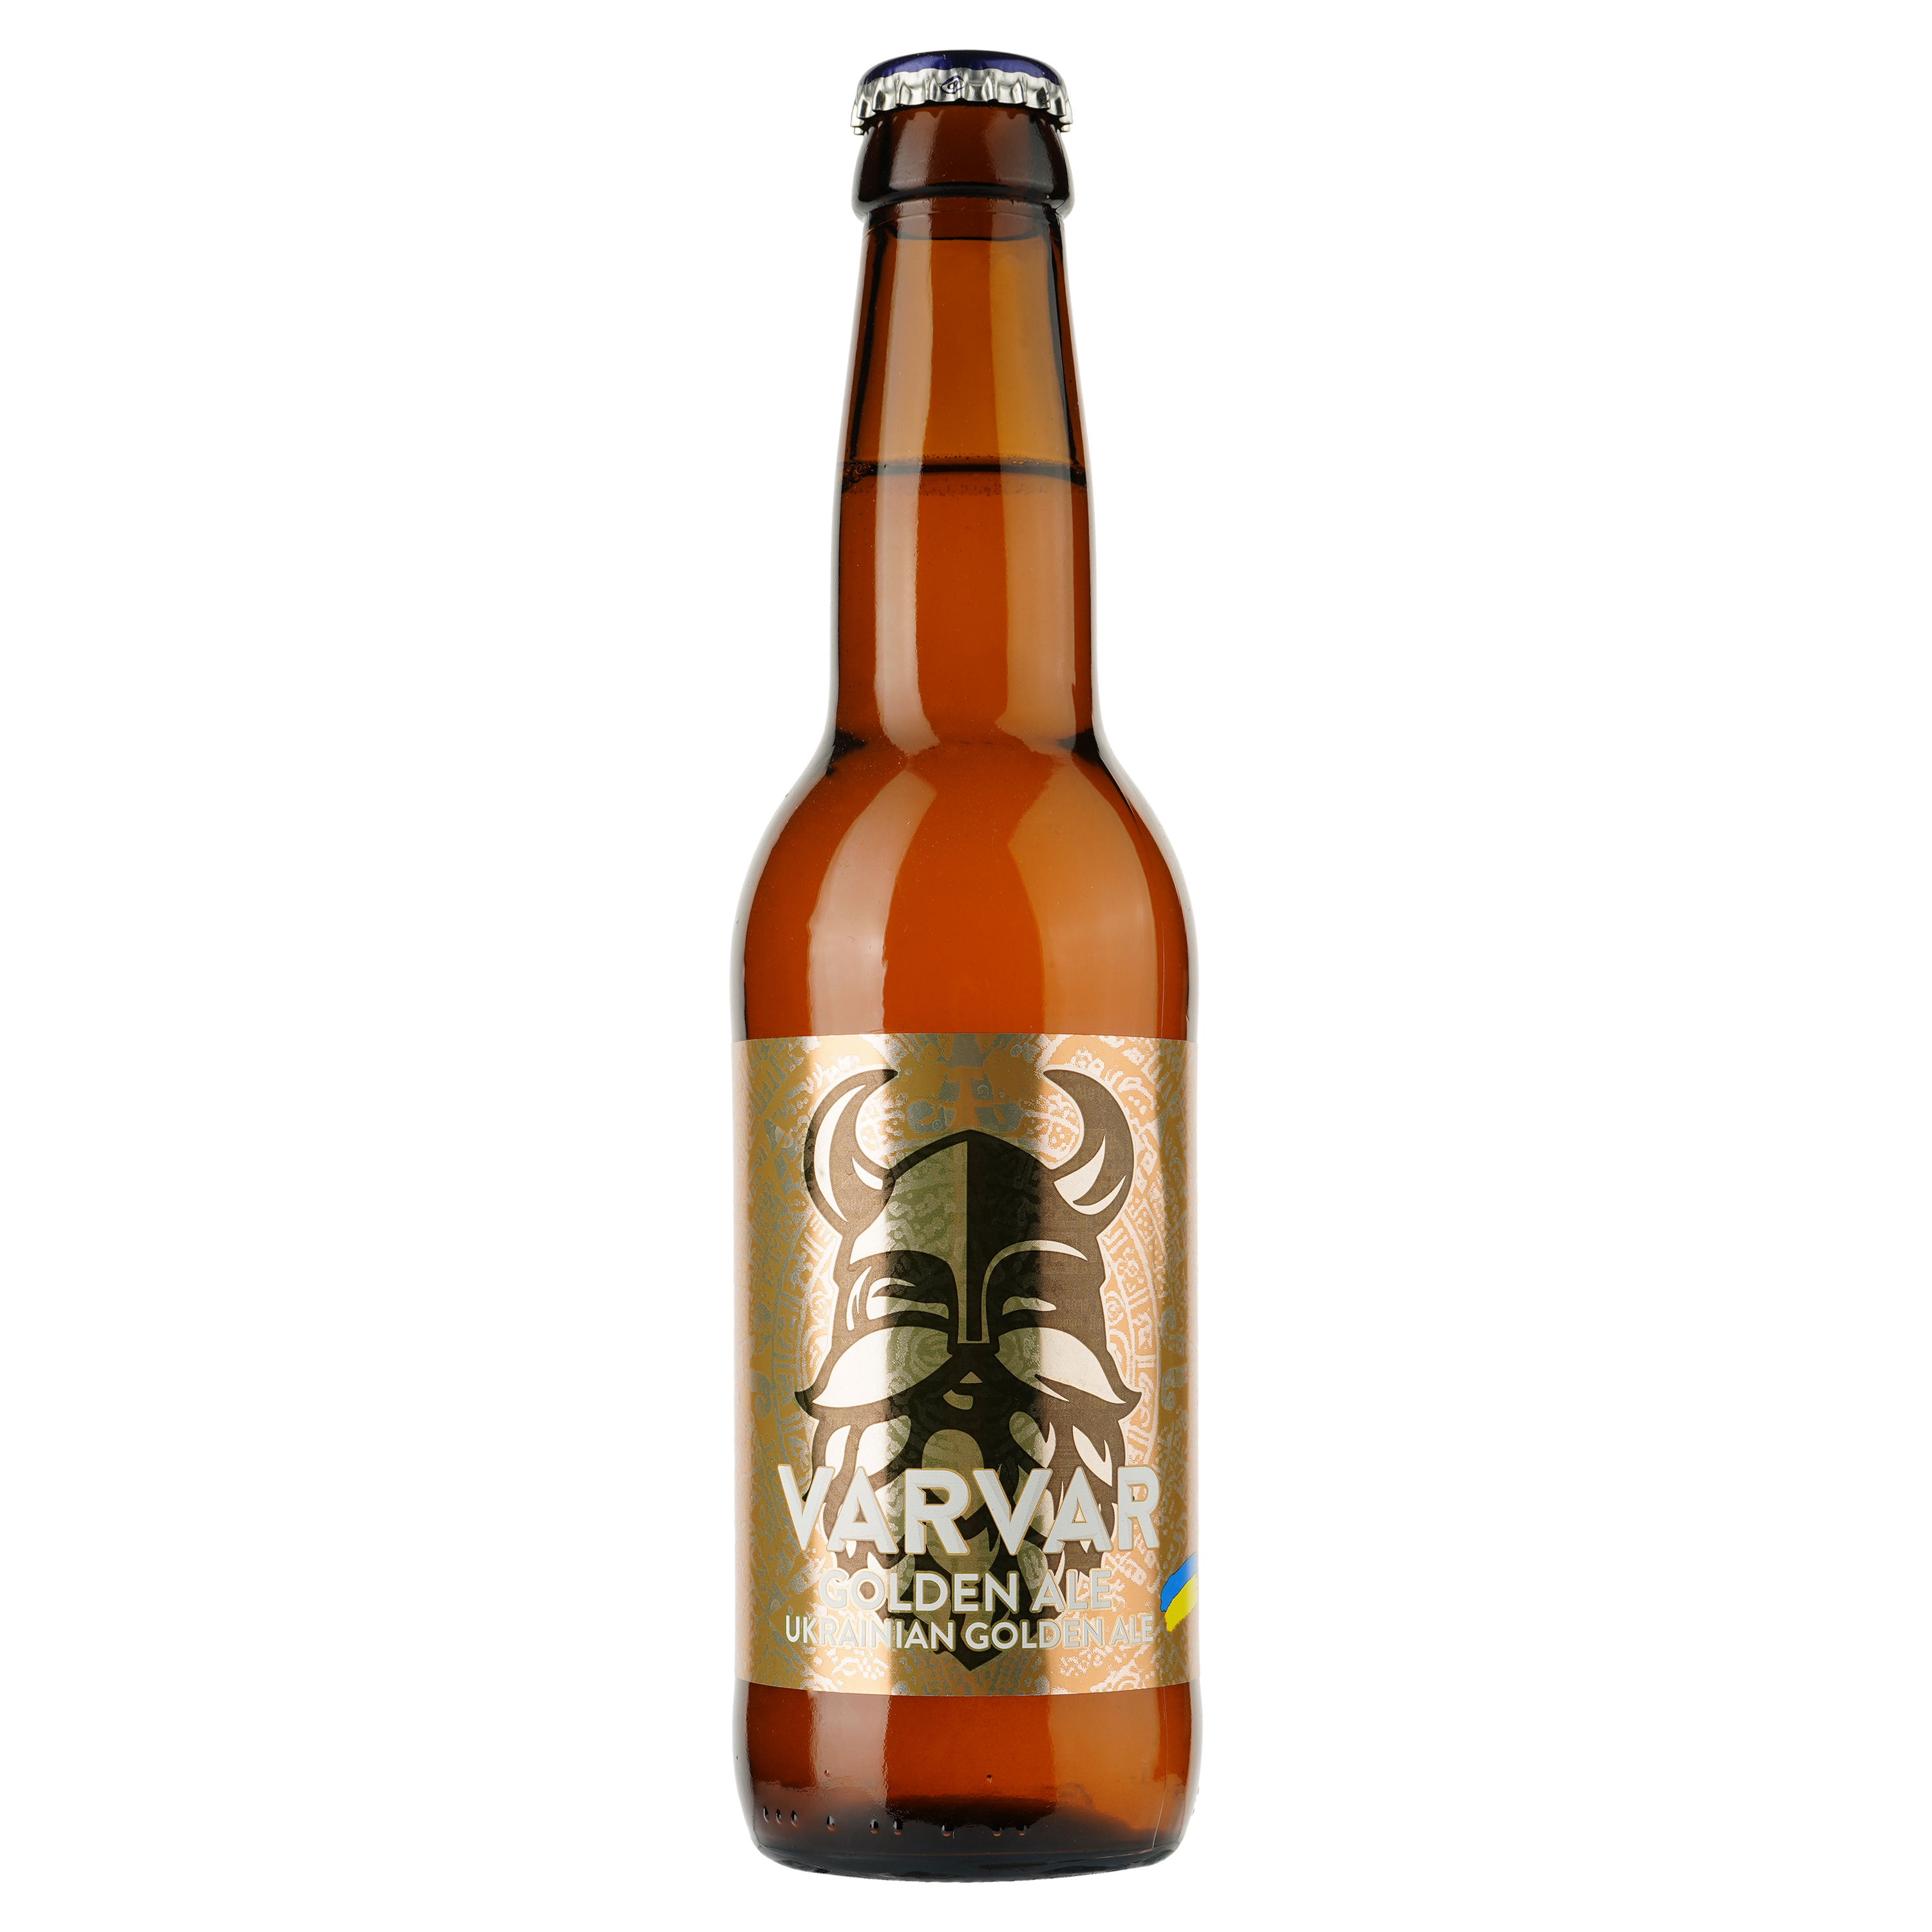 Пиво Varvar Golden Ale светлое, 6,9%, 0,33 л (701767) - фото 1